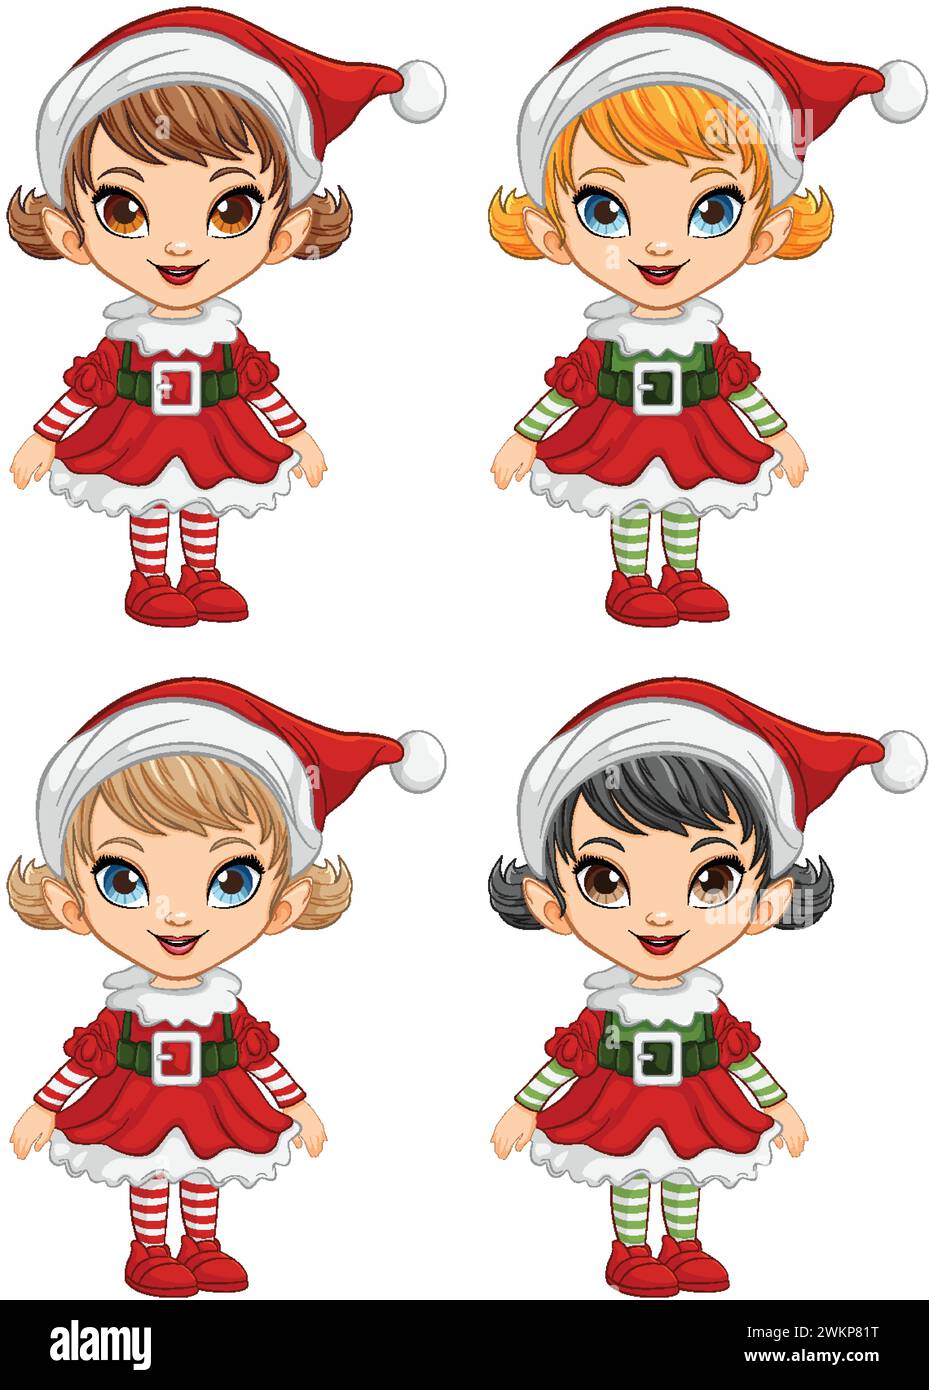 Four cartoon elves in festive Christmas attire. Stock Vector